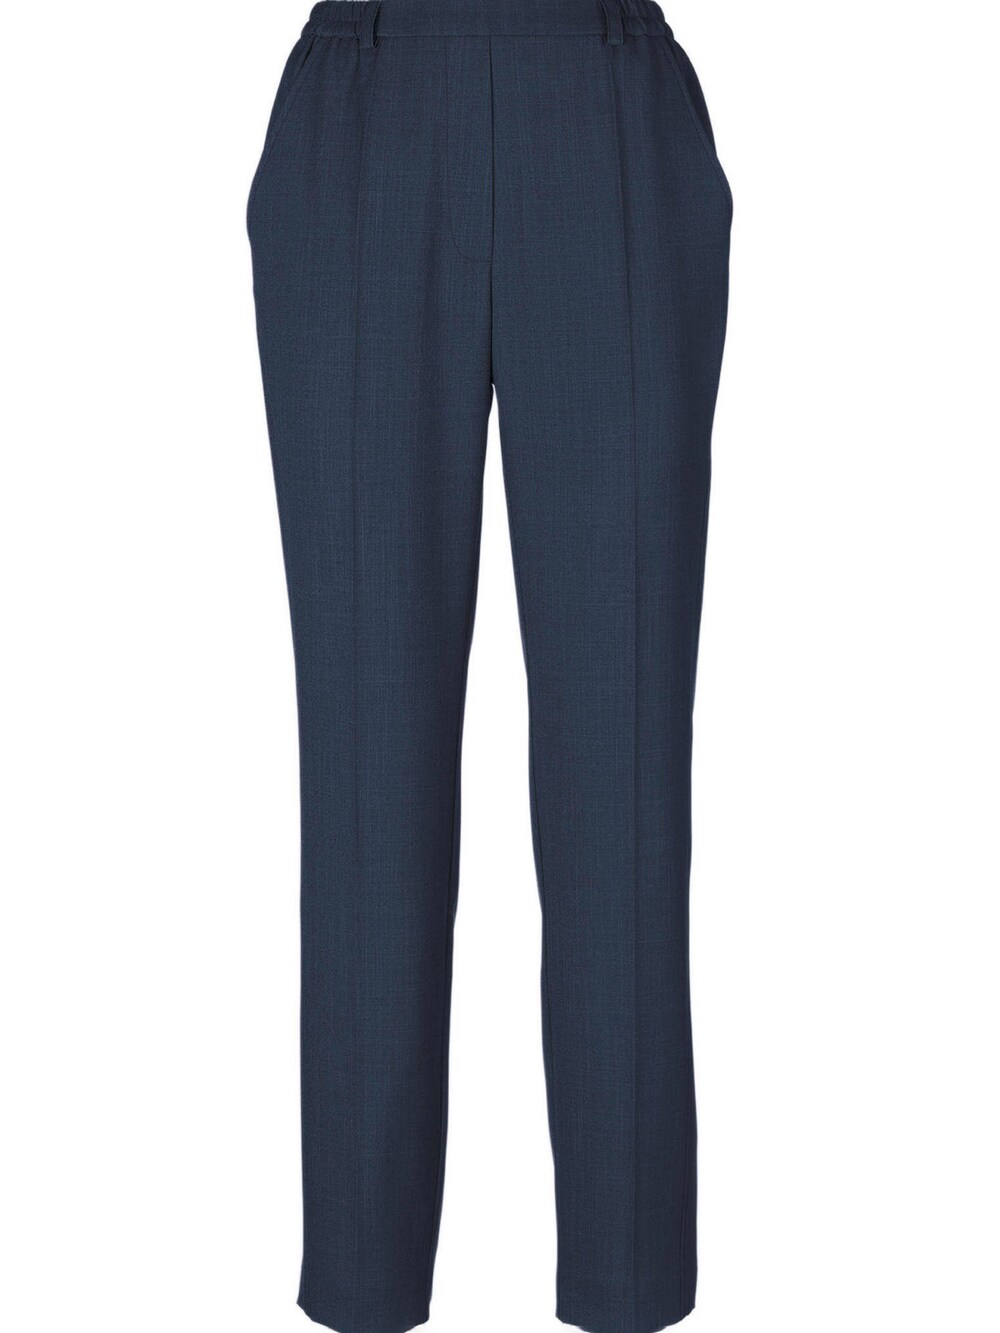 Обычные плиссированные брюки Goldner Martha, темно-синий обычные плиссированные брюки esprit темно синий